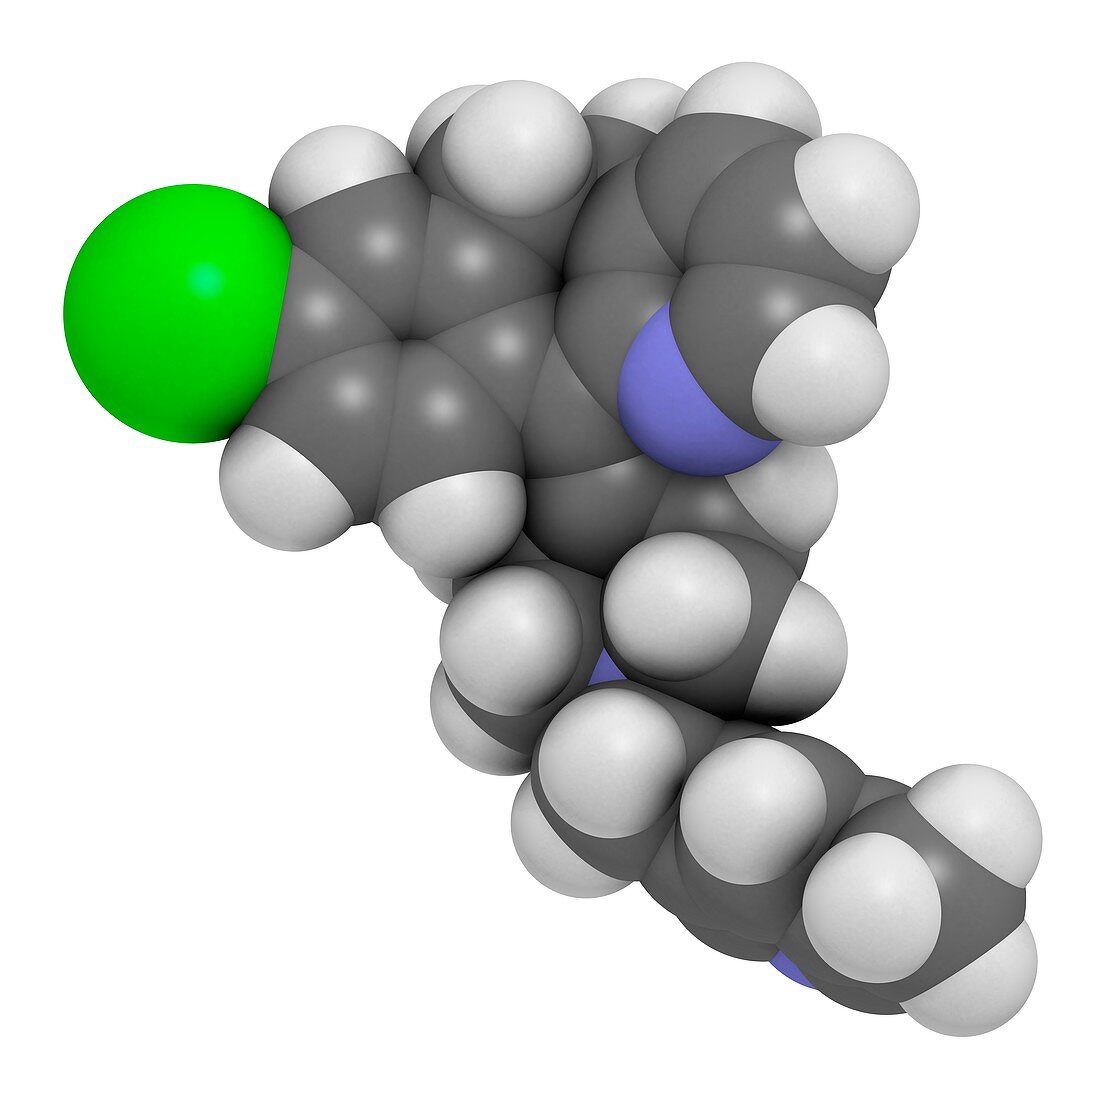 Rupatadine antihistamine drug molecule